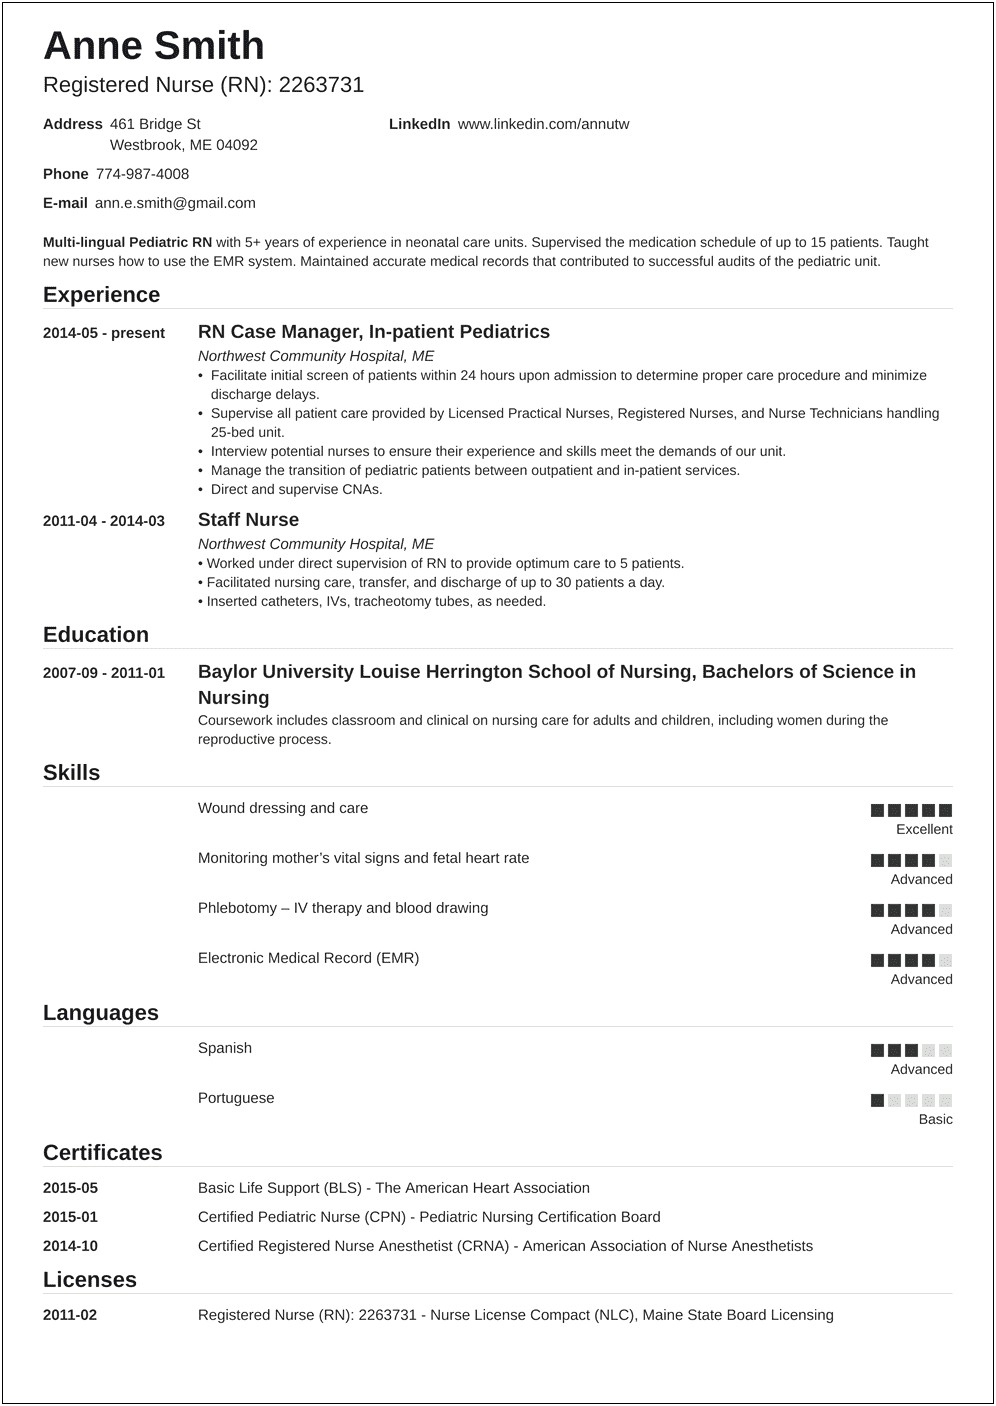 Professional Description For Resume Registered Nurse